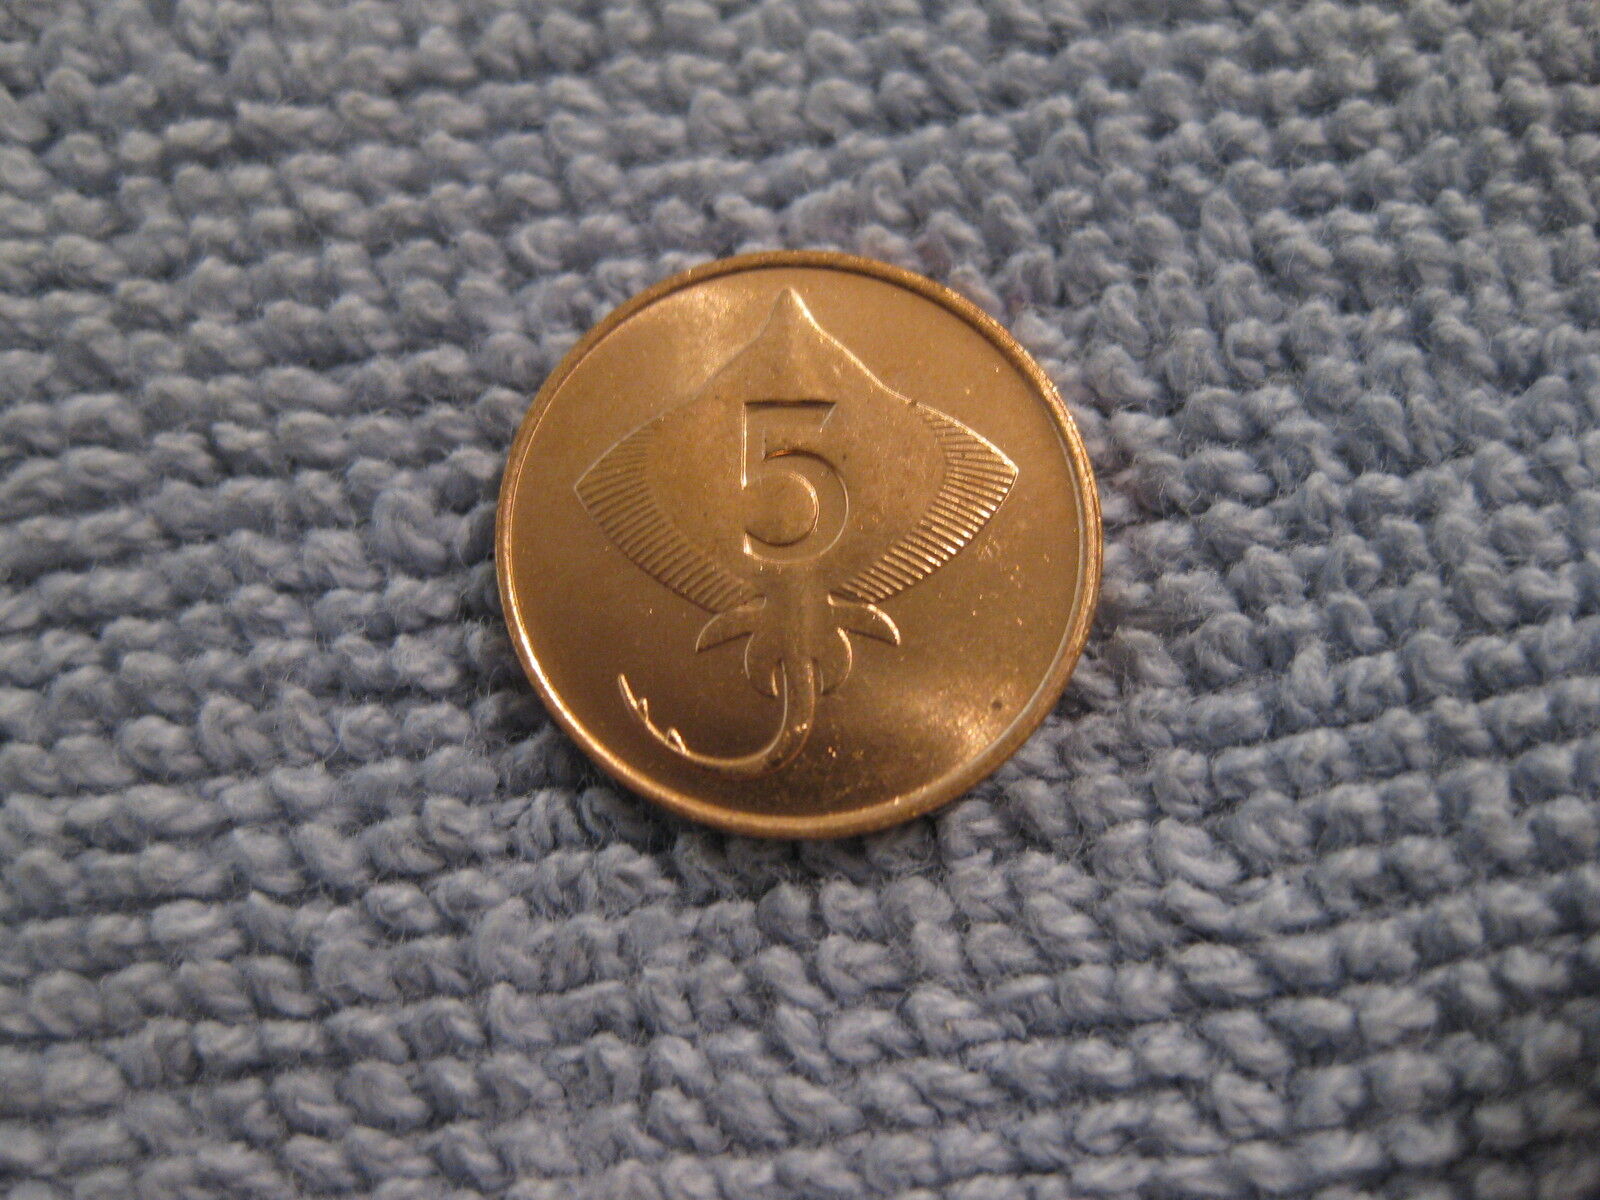 1981 Iceland Coin  5 Aurar  Skate Fish Uncirculated Beauty Animal Coin Ebayship